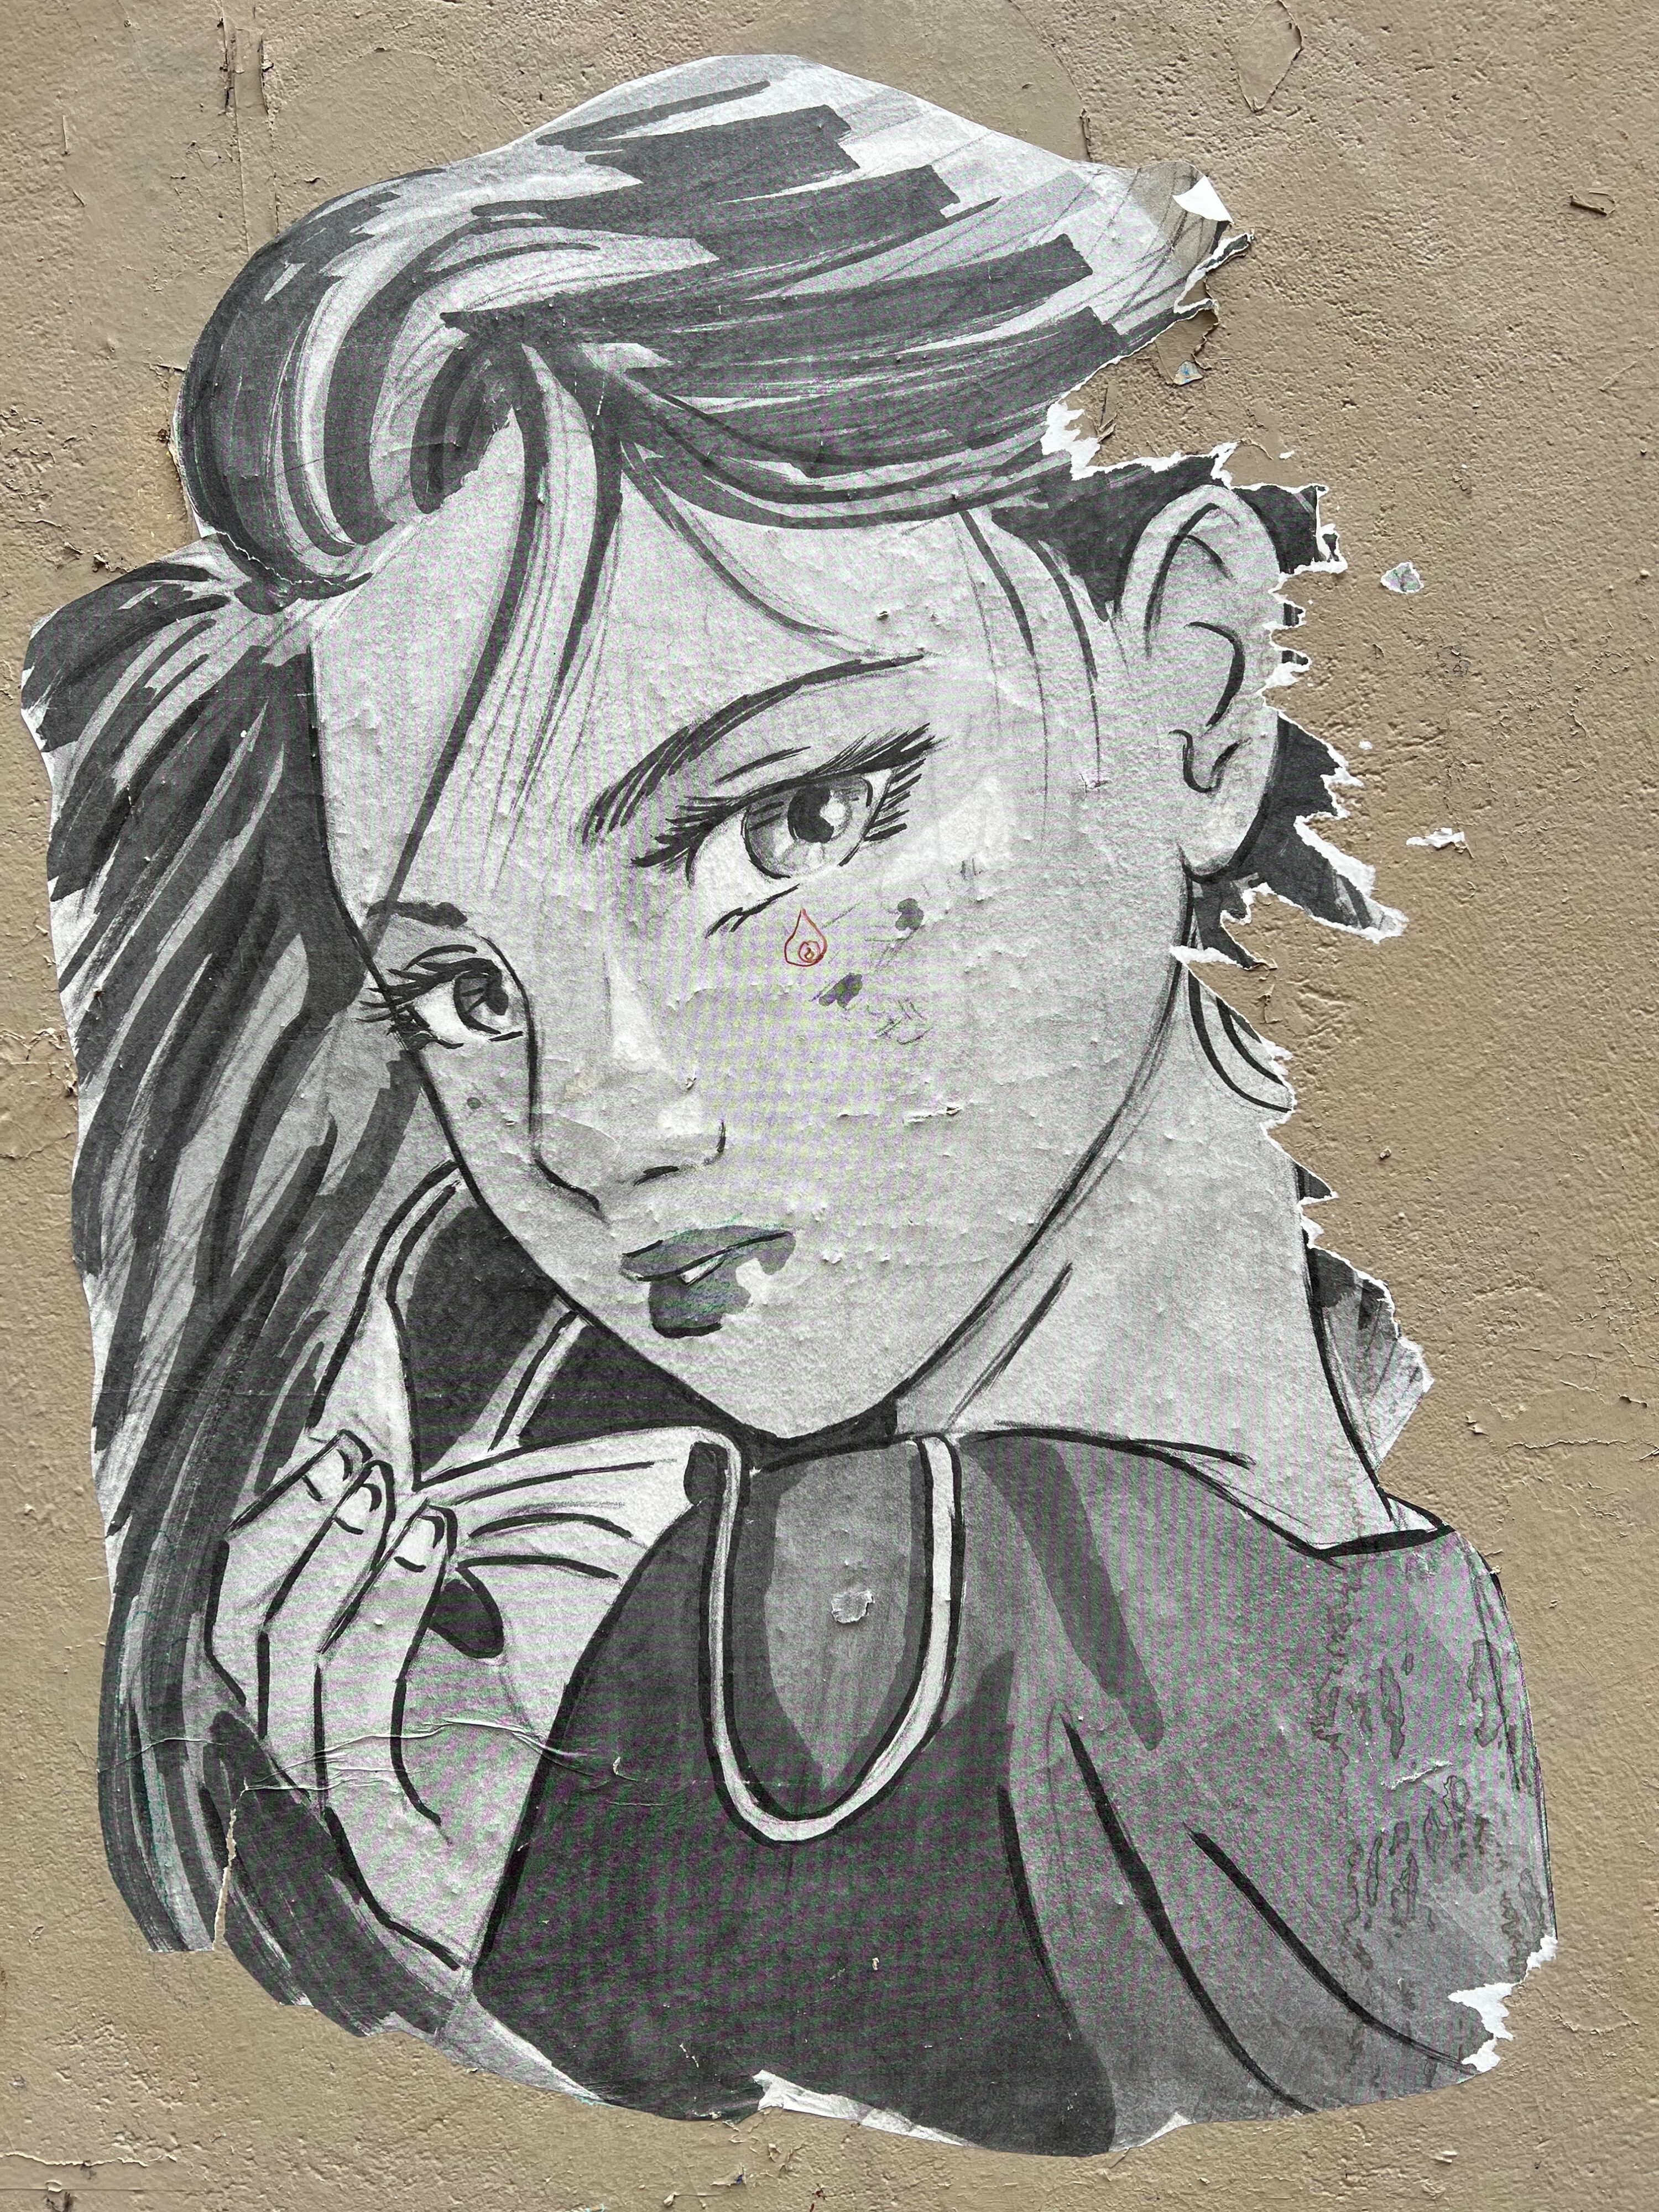 street art found in the Passage du Chantier in Paris